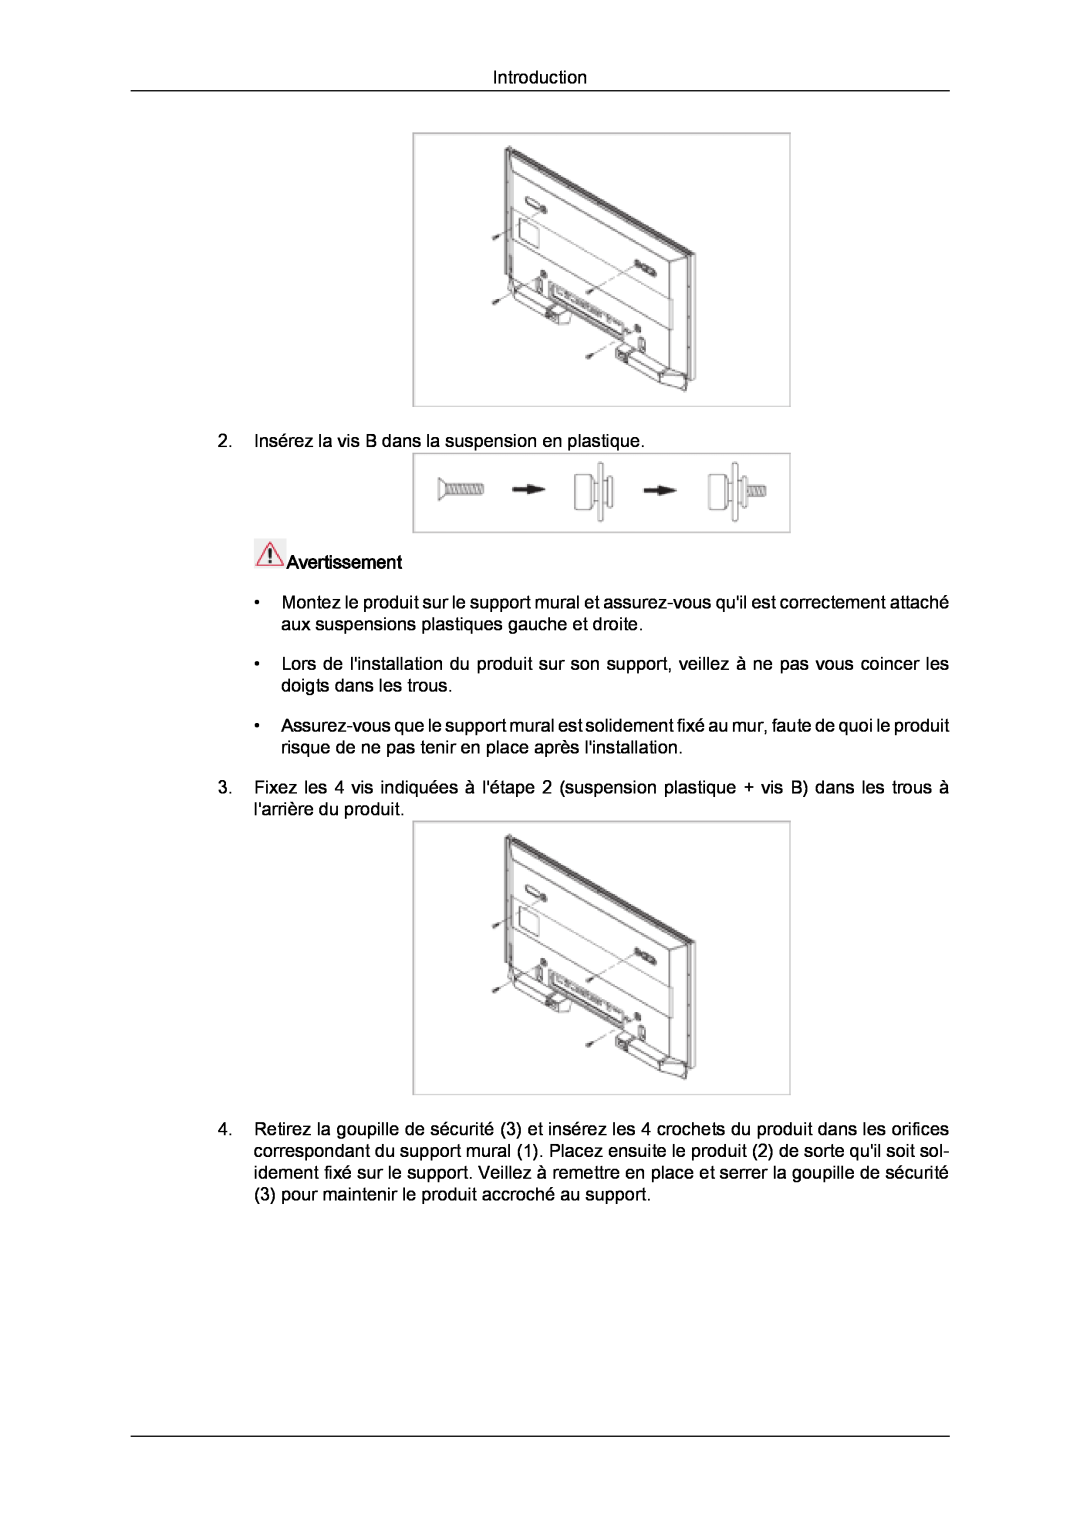 Samsung LH46SOQQSC/EN, LH46SOUQSC/EN, LH46SOTMBC/EN manual Introduction 2. Insérez la vis B dans la suspension en plastique 